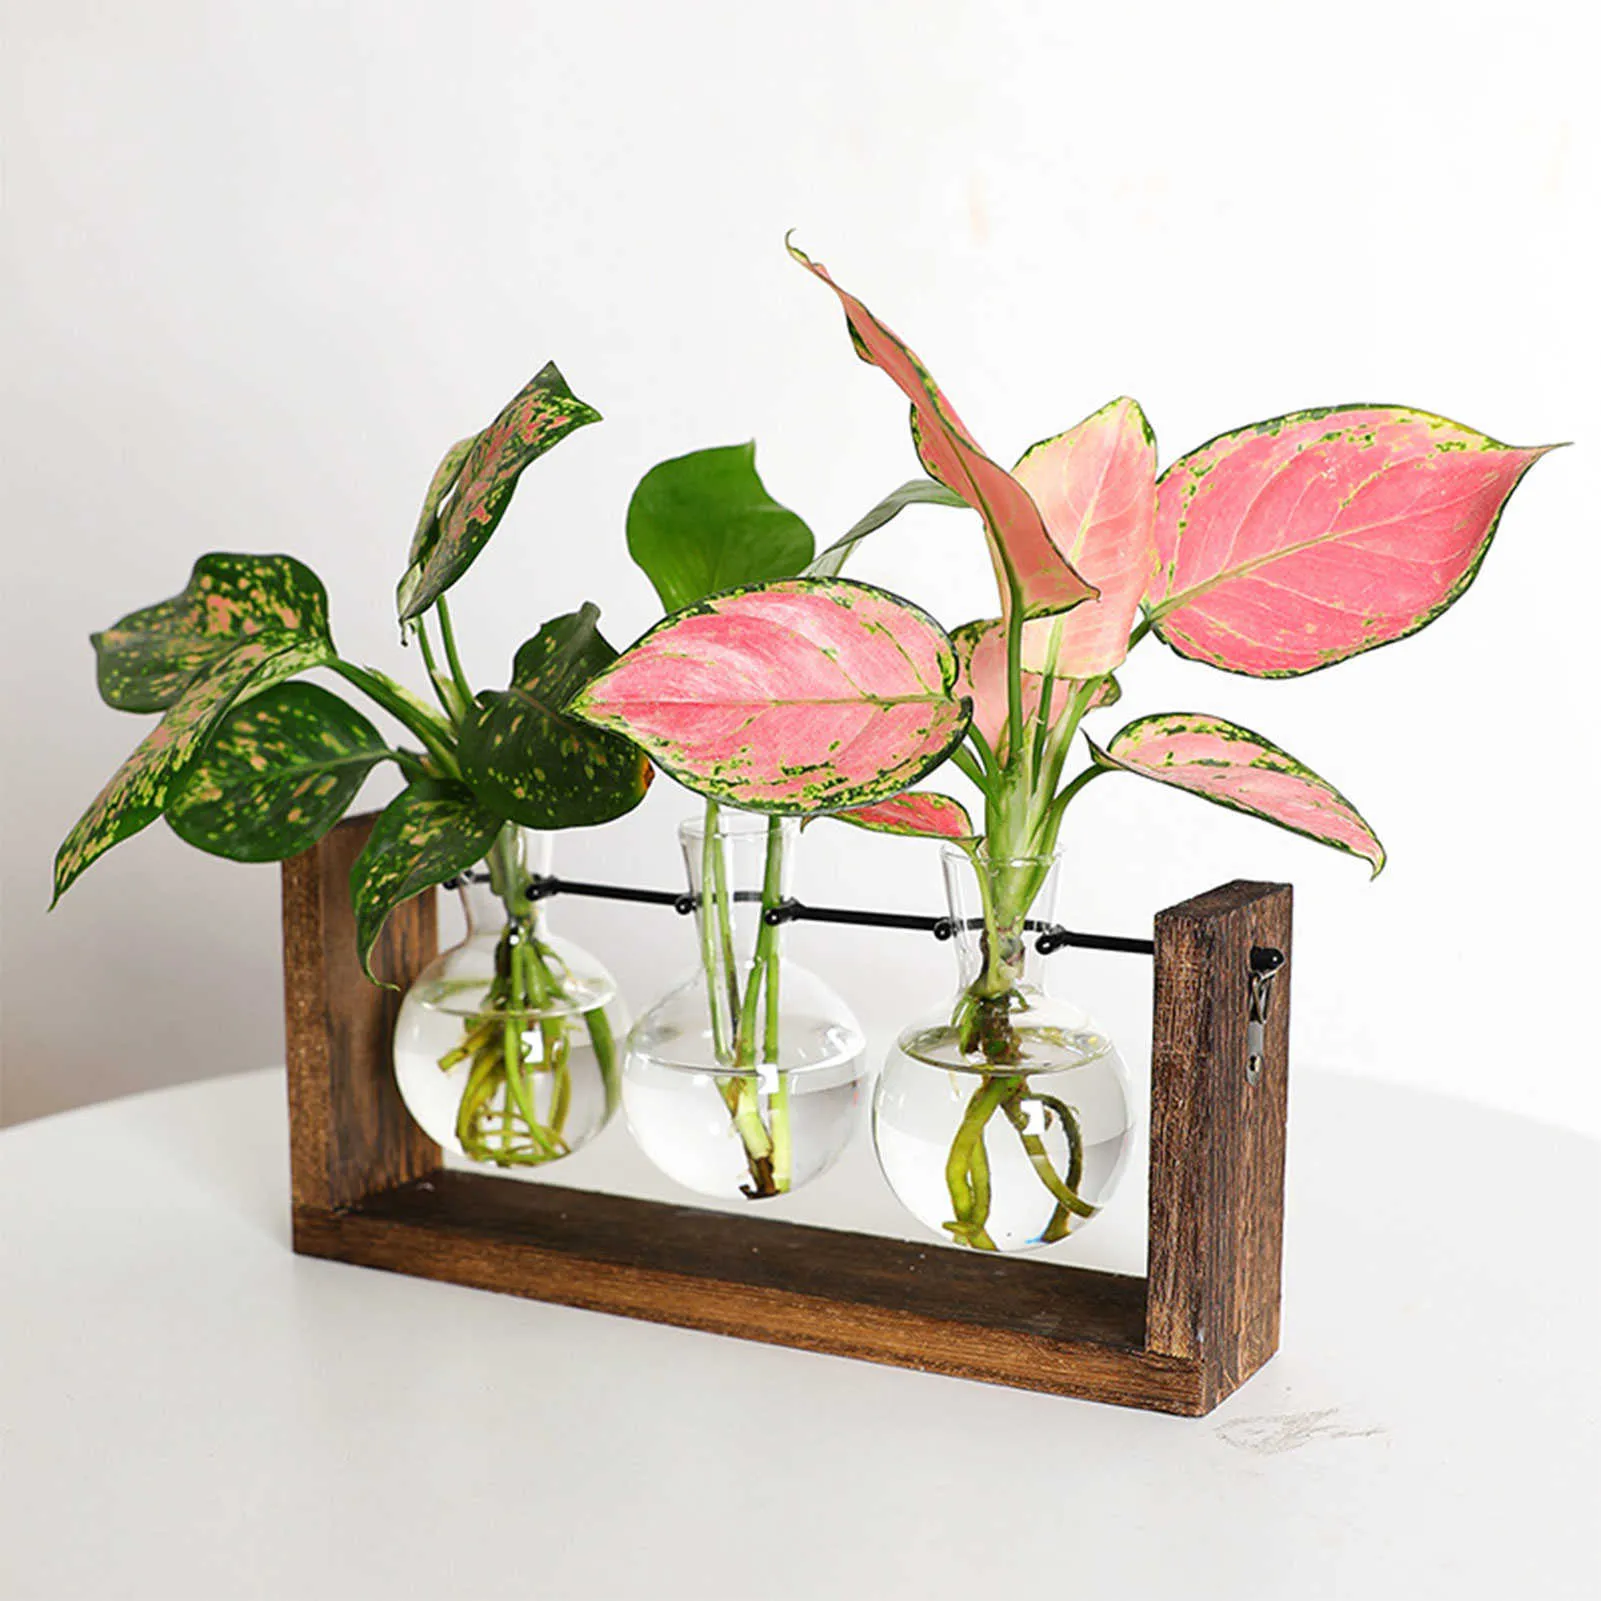 Jardinières avec cadre en verre, Vases pour plantes hydroponiques, bonsaï, Pot de fleur suspendu Transparent avec plateau en bois, décoration murale de la maison